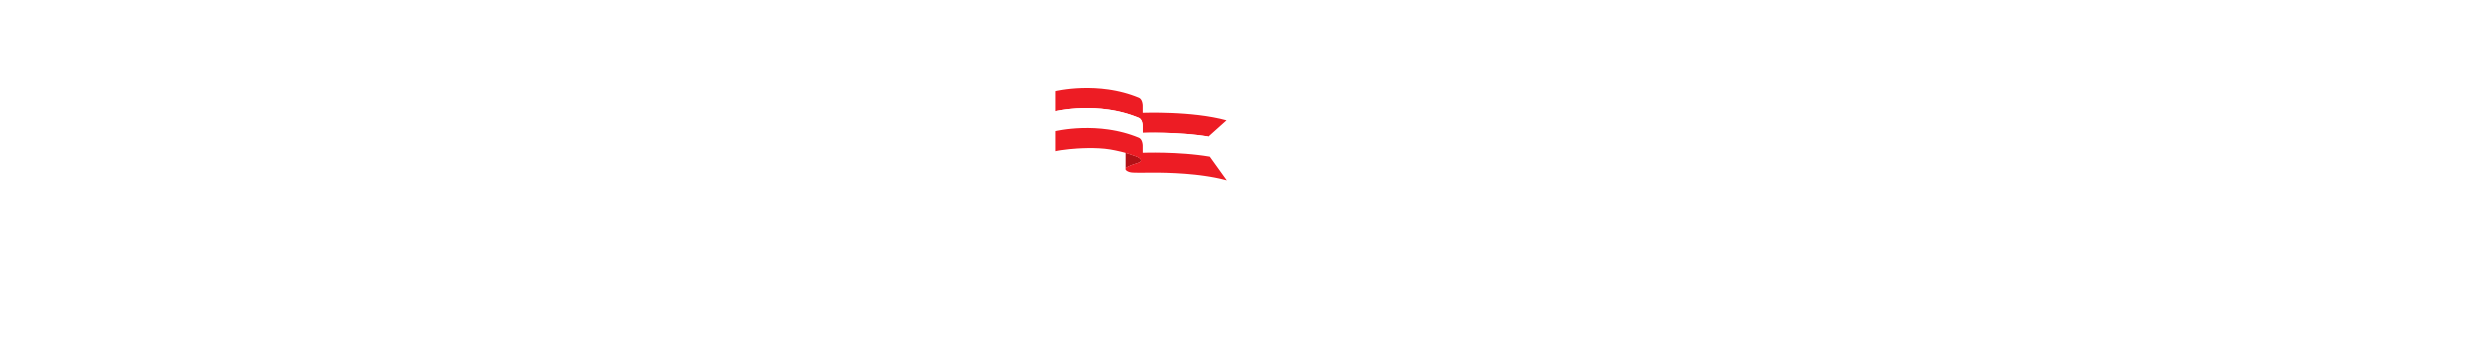 CT Digital Media Tax Credit Logo